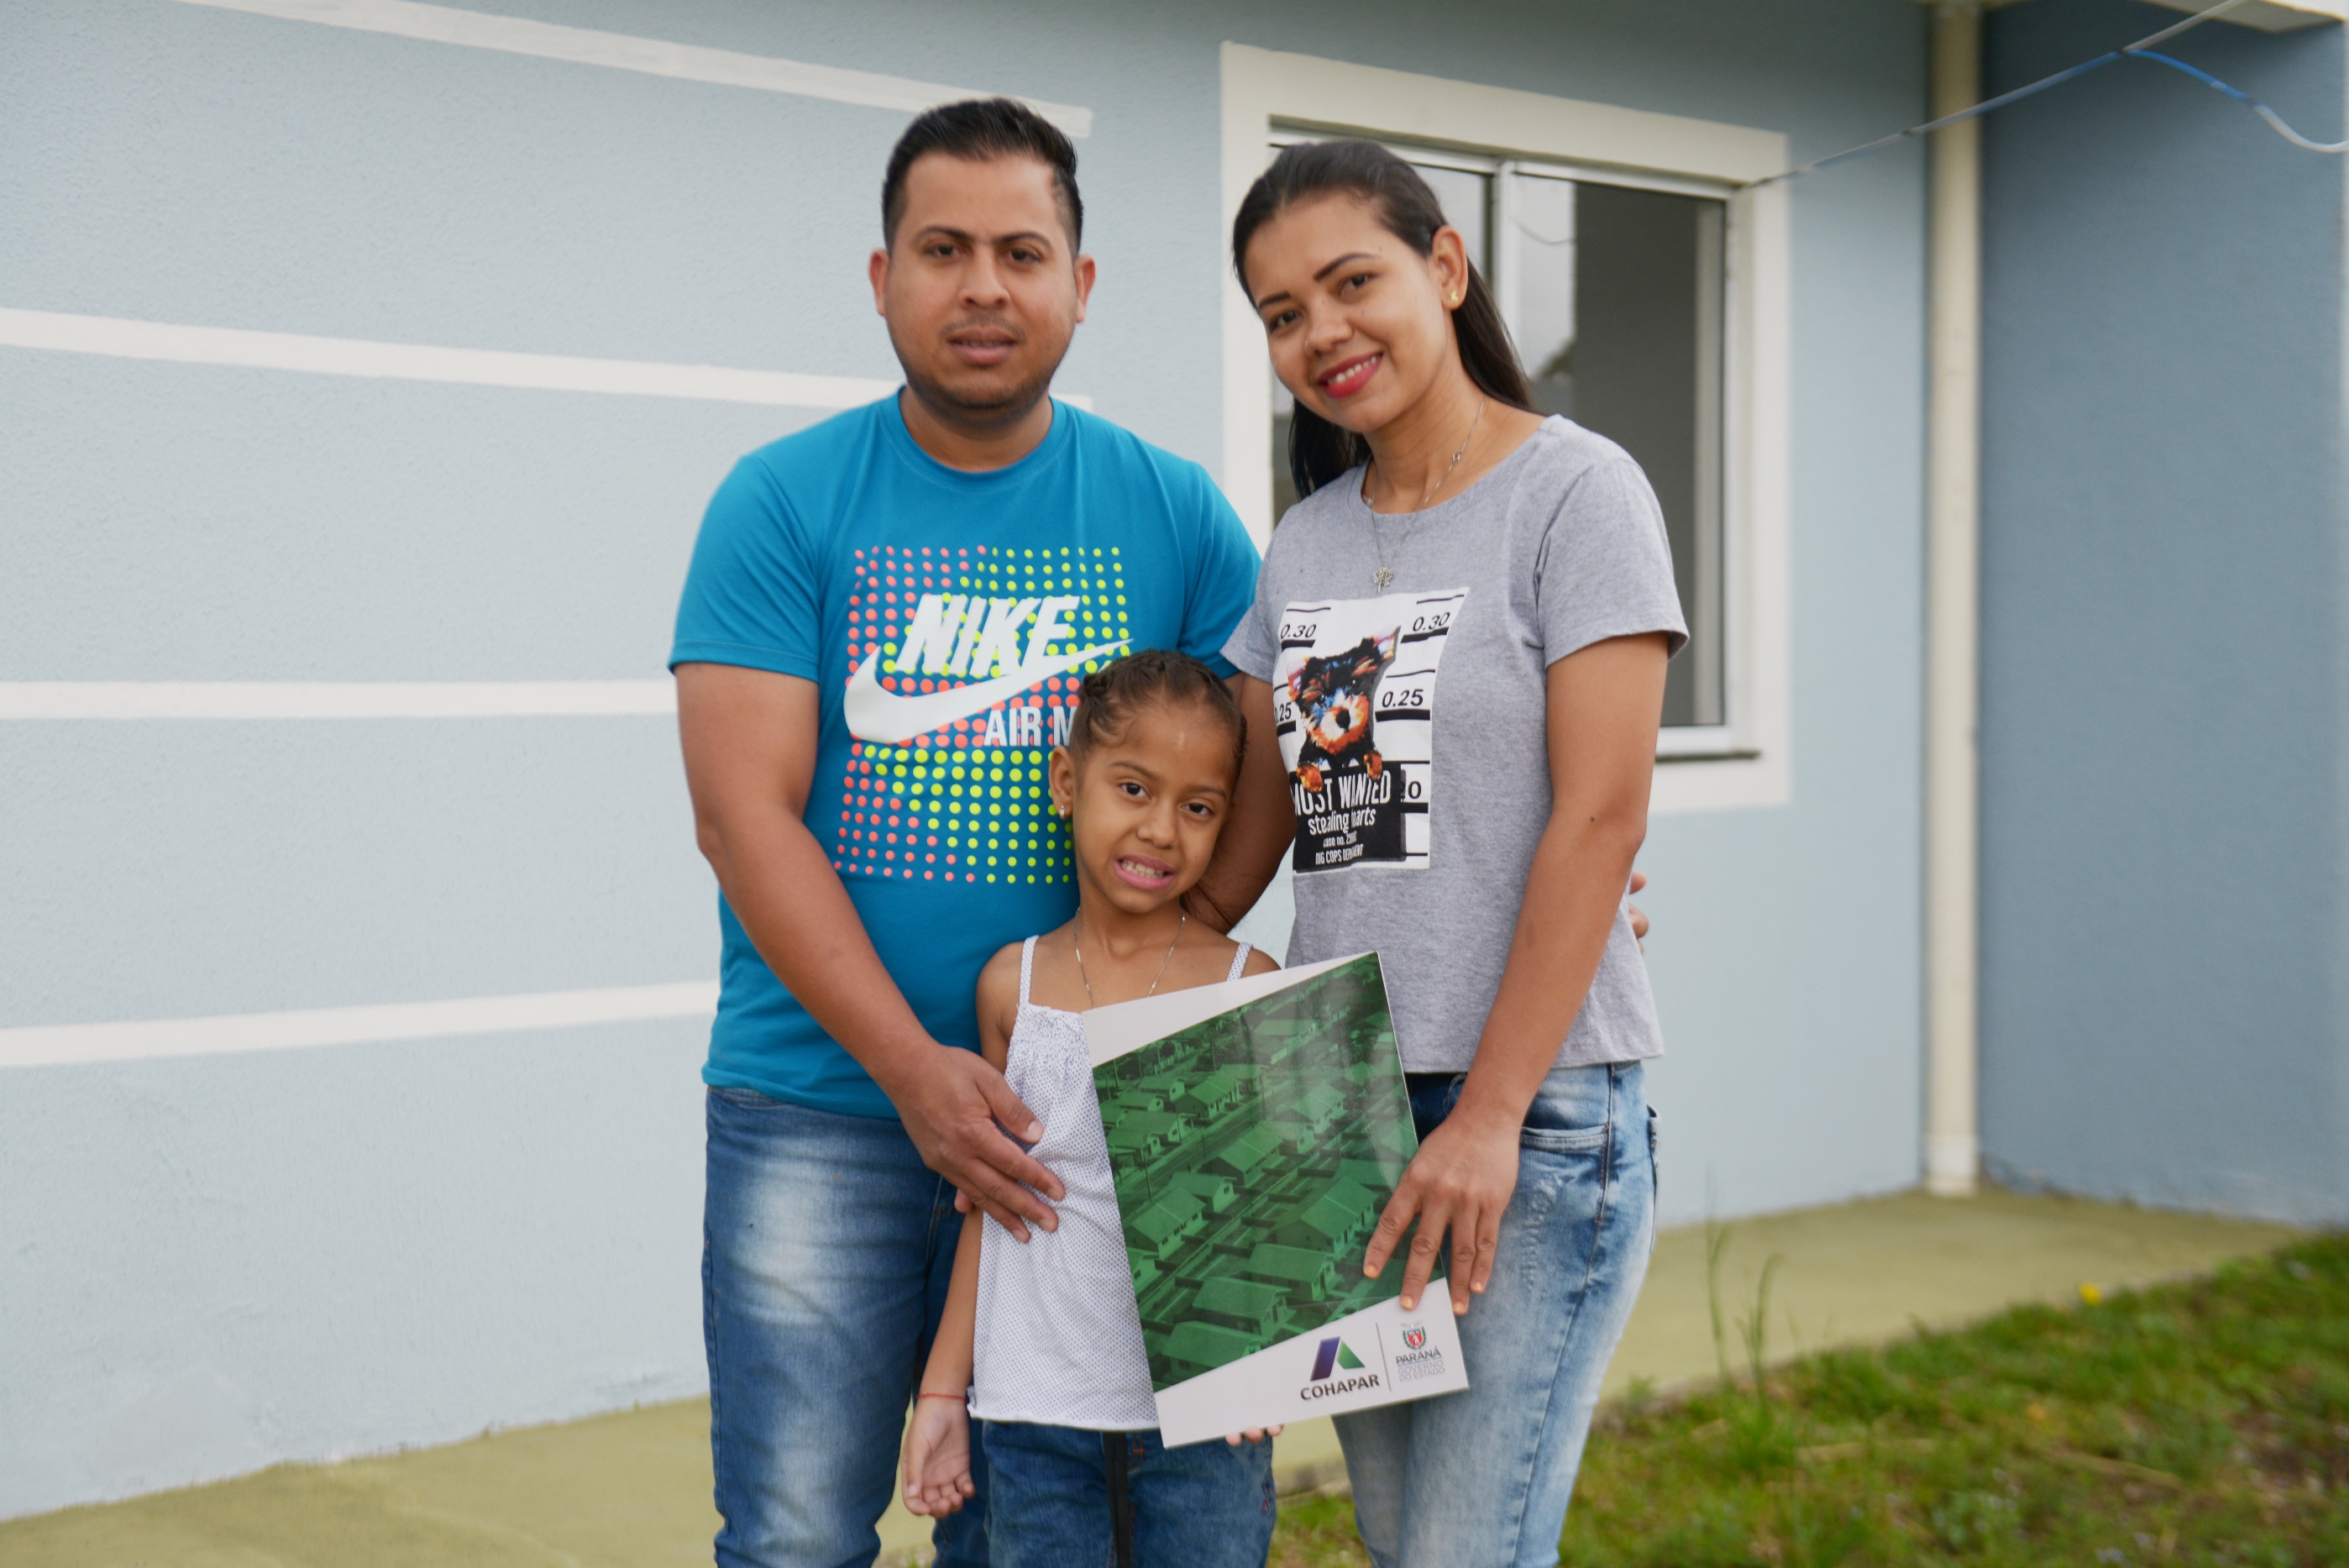 Trinta e seis famílias de Piraquara recebem chaves da casa própria